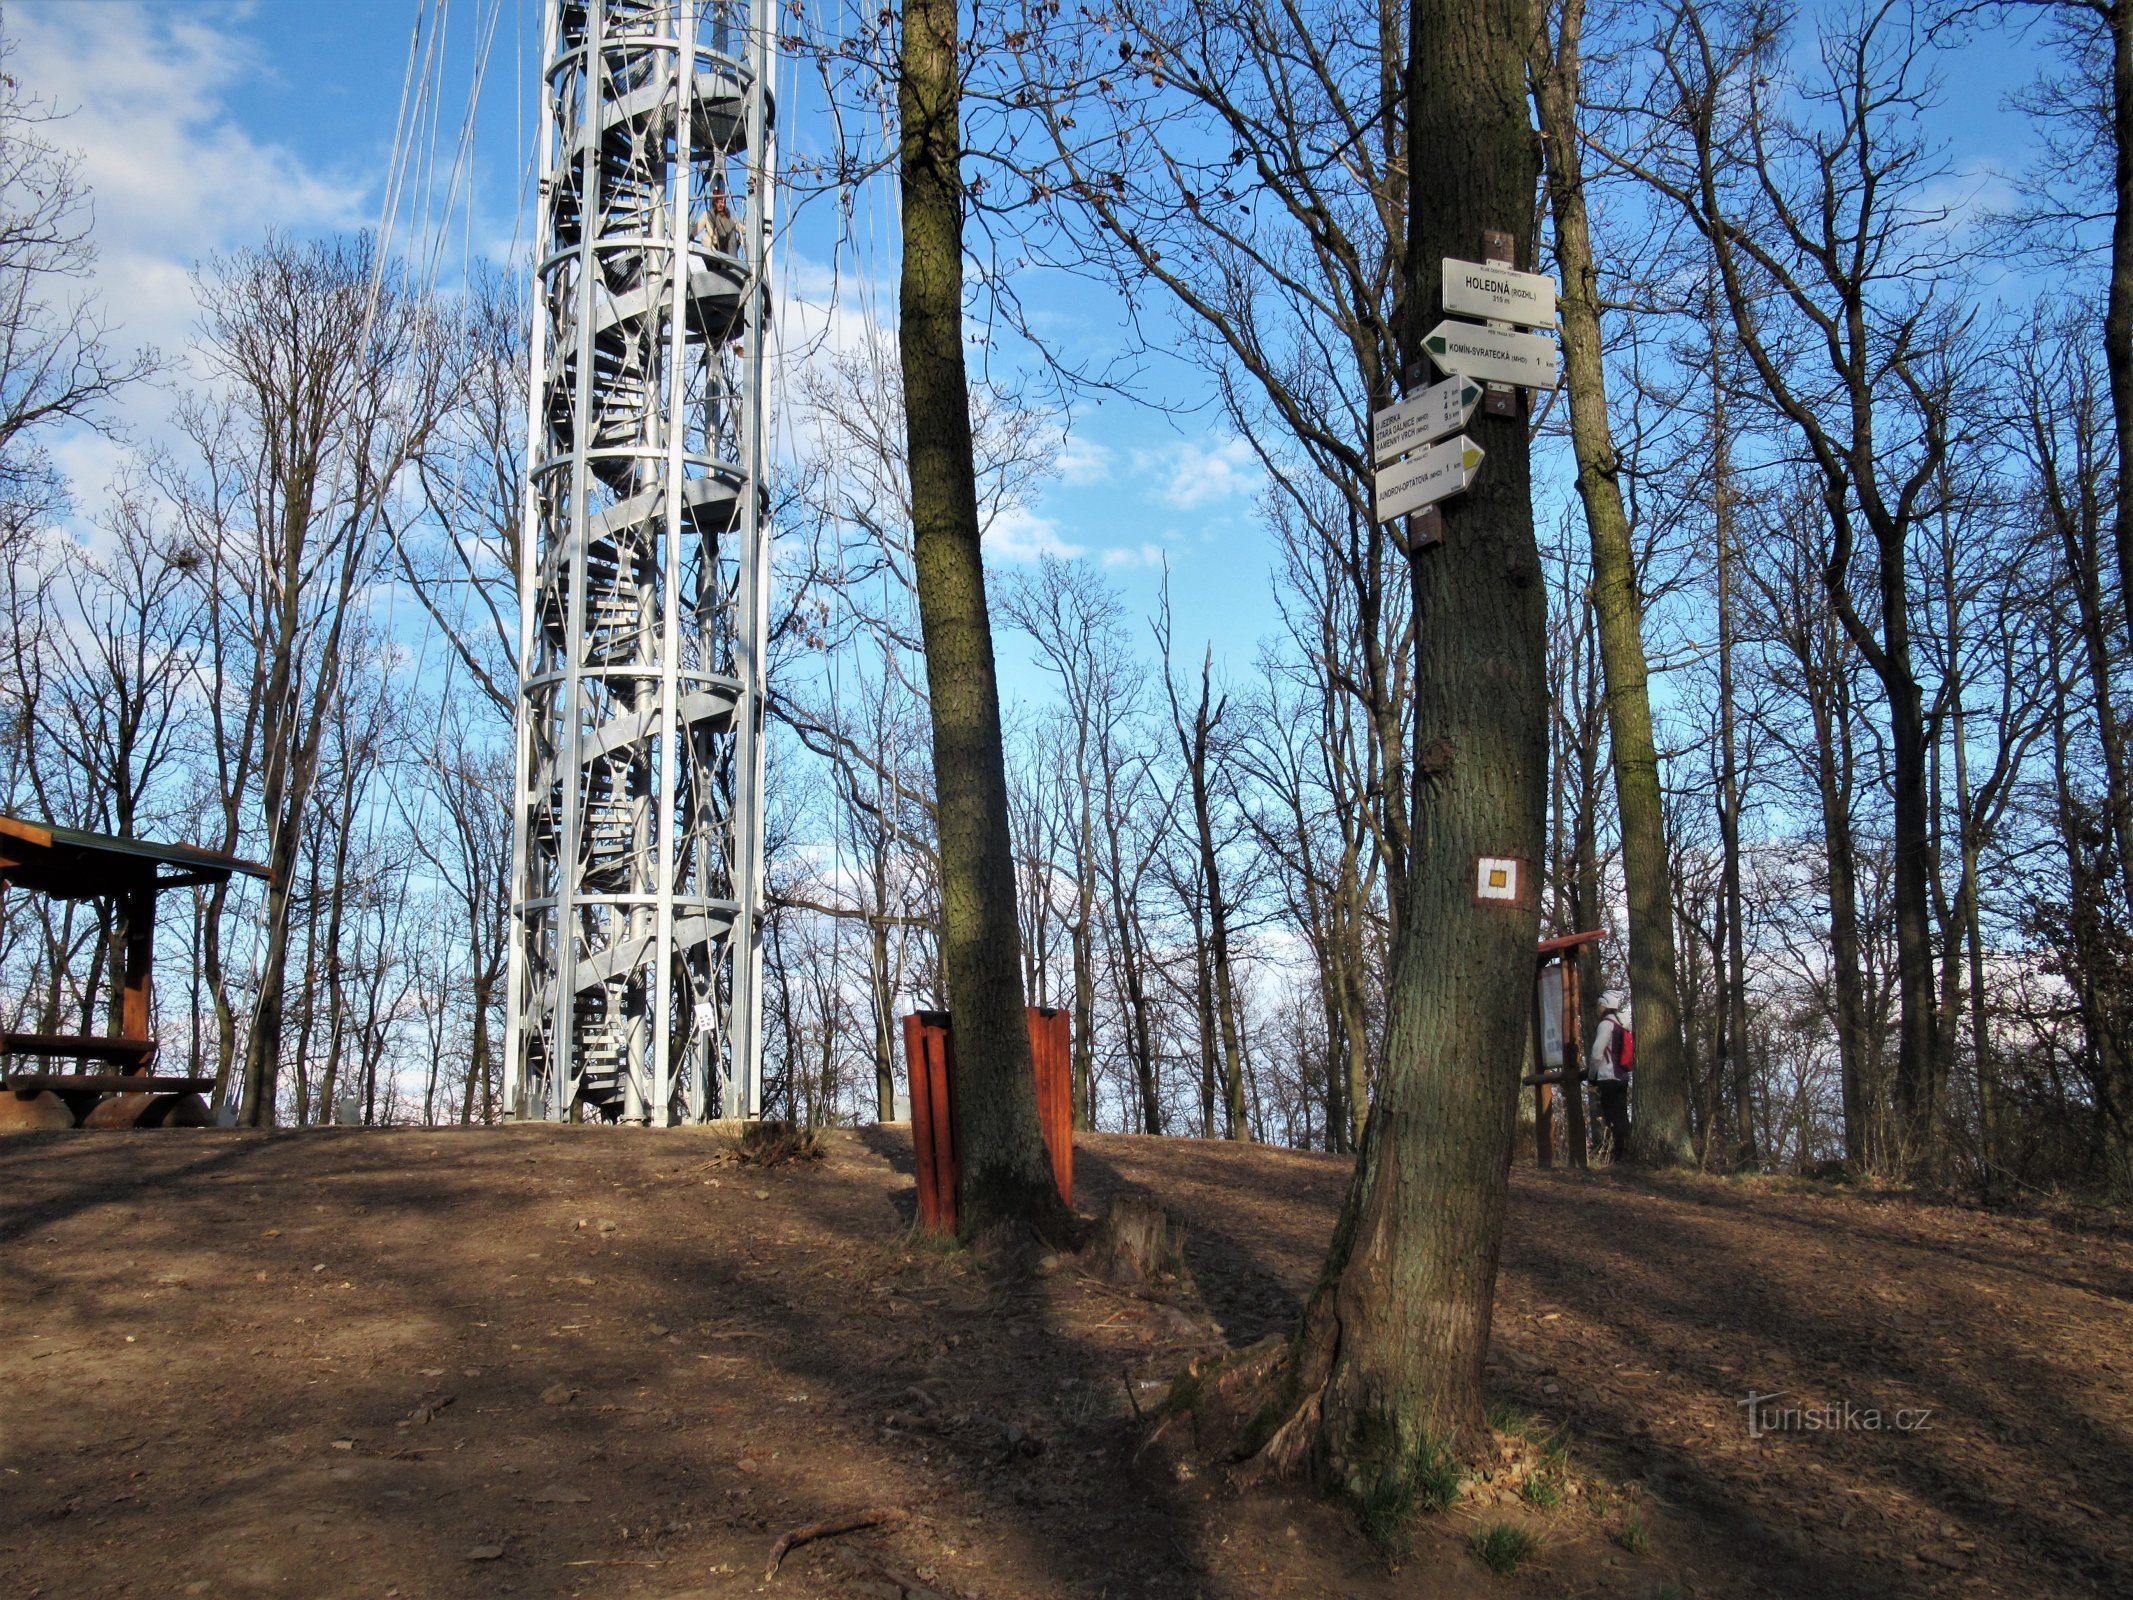 Encruzilhada turística com torre de observação